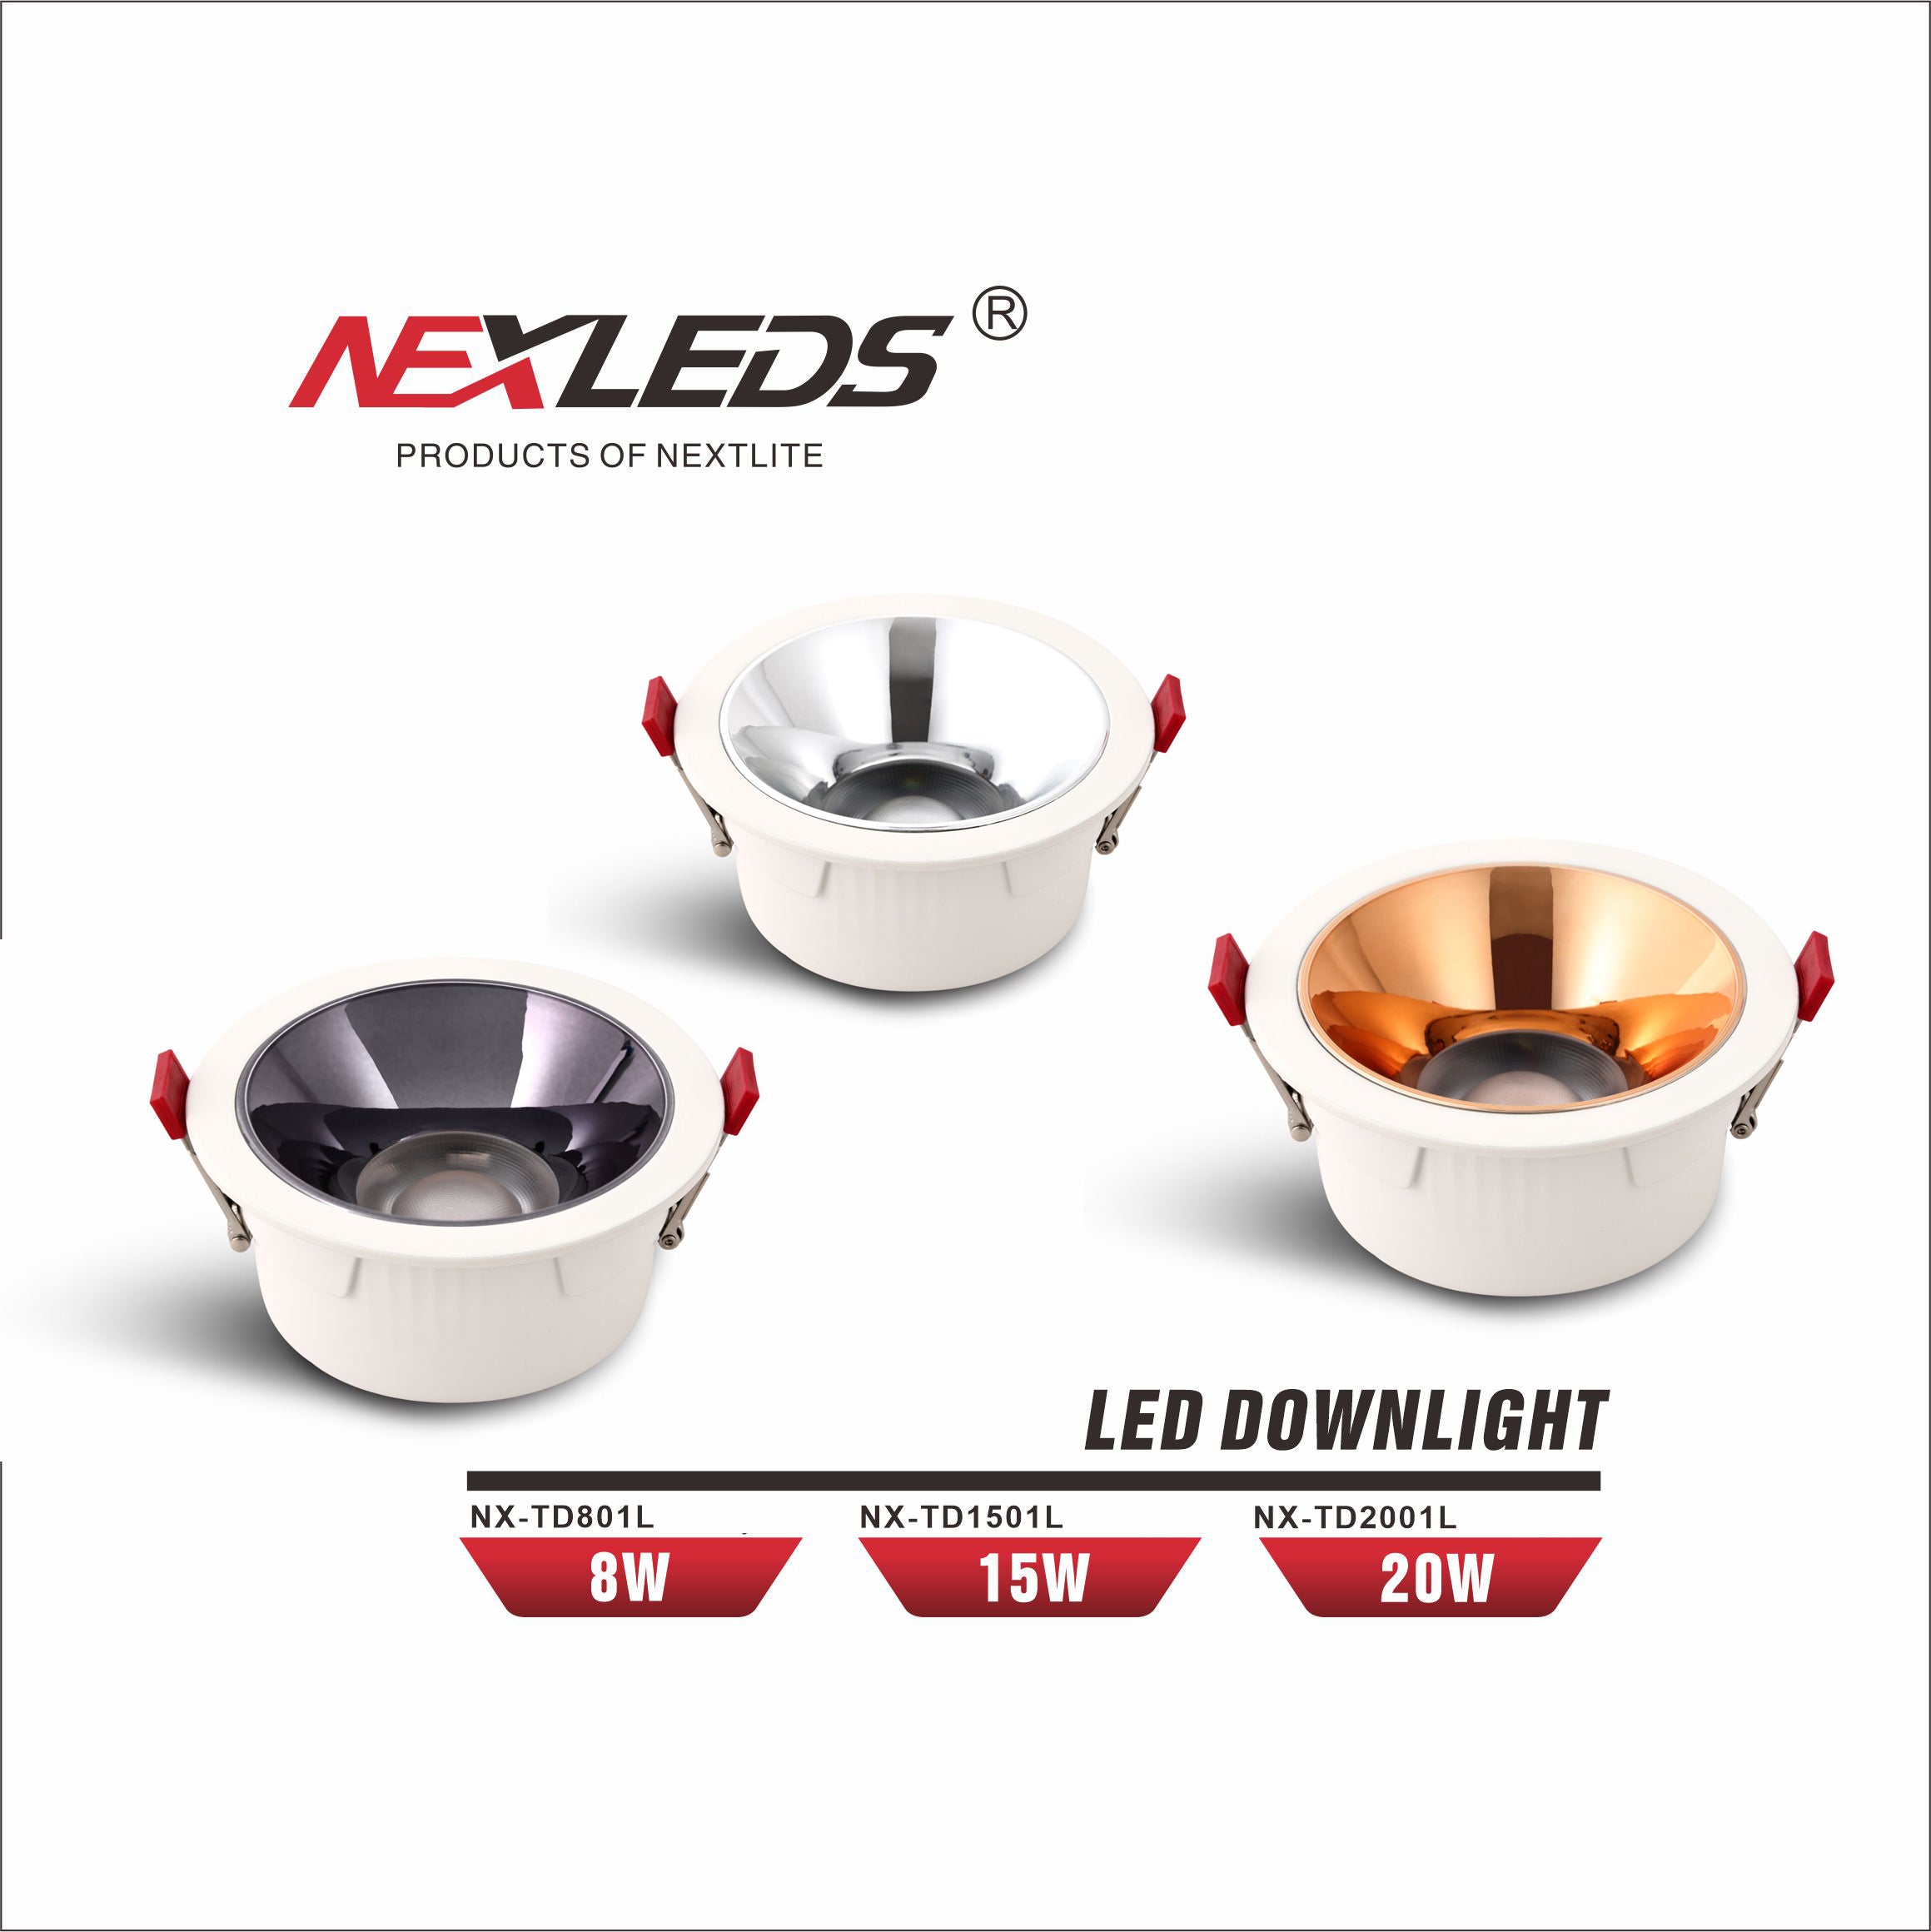 LED DOWNLIGHT NX-TD801L,NX-TD1501L, NX-TD2001L